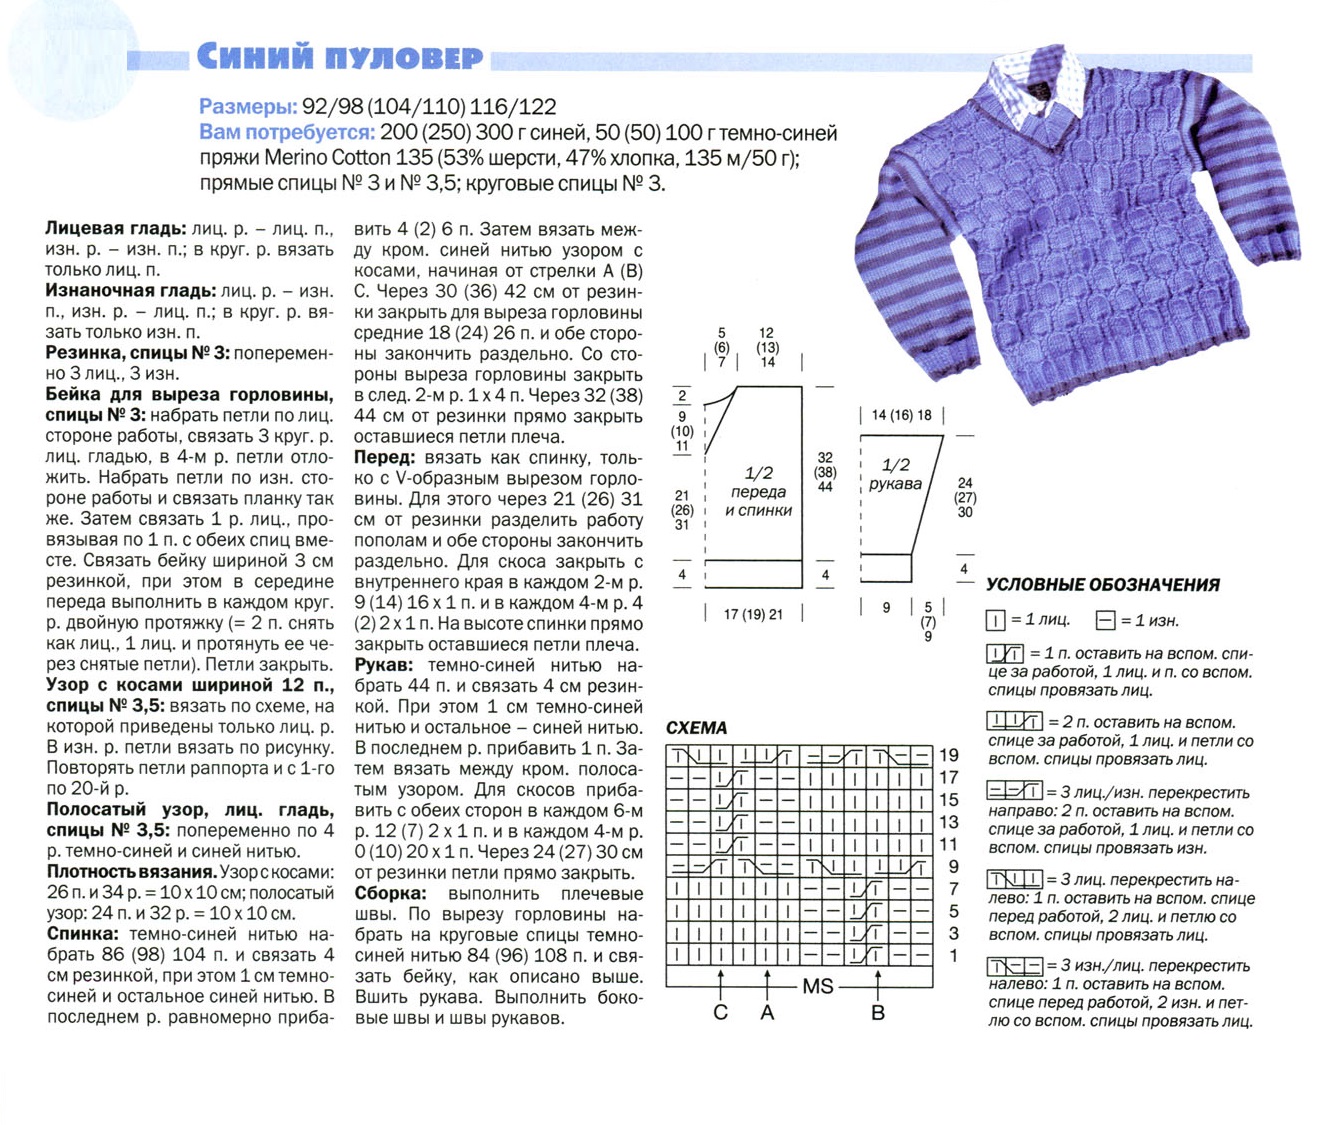 Пуловер для мальчика спицами: 16 моделей со схемами и описанием